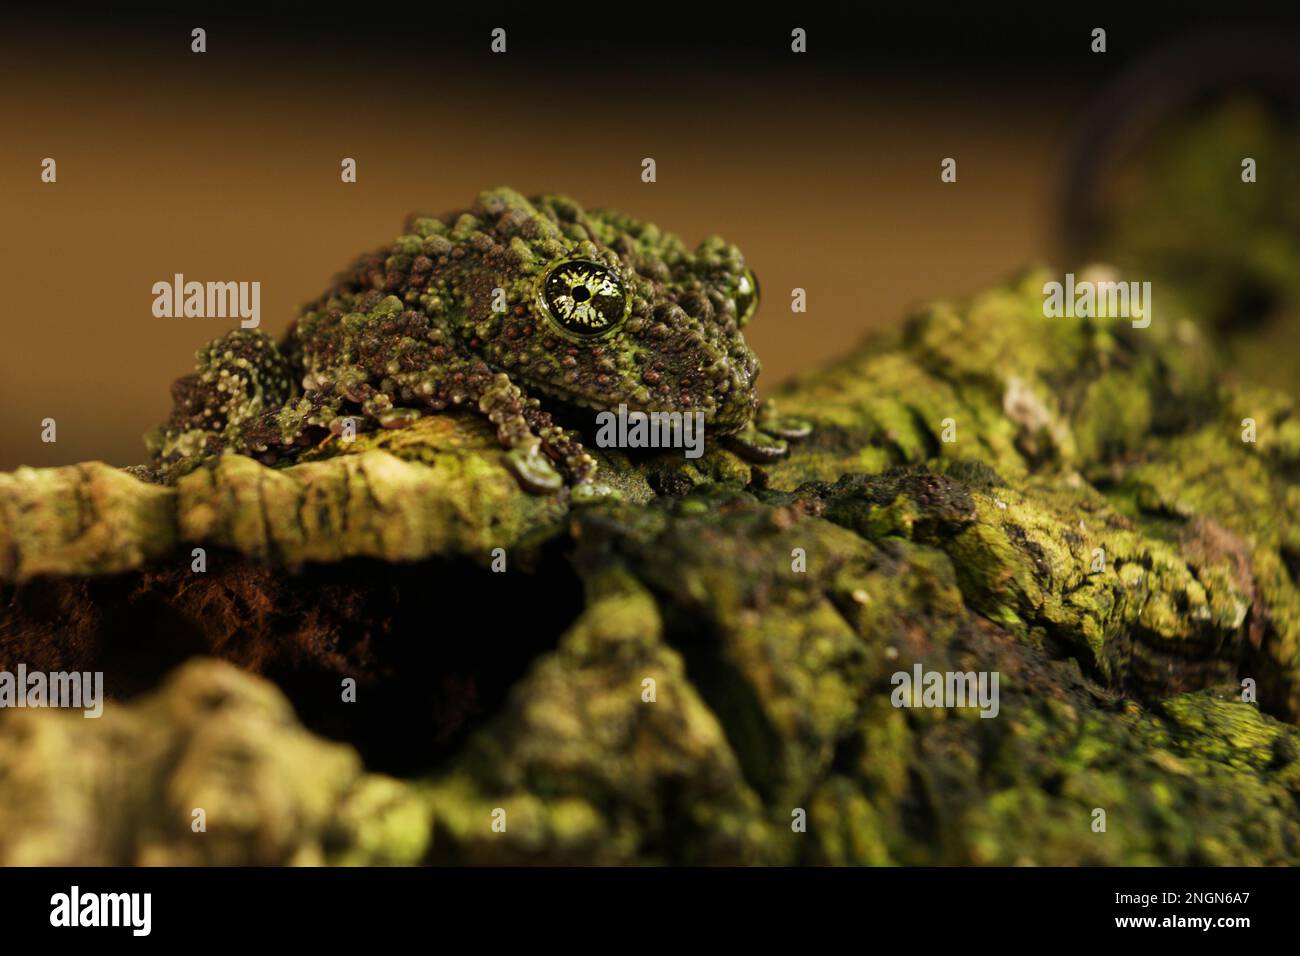 Grenouille mossy (Theloderma corticale), grenouille dans l'habitat naturel, Vietnam. Nature sauvage en Asie. Amphibien sur l'ancienne végétation Banque D'Images